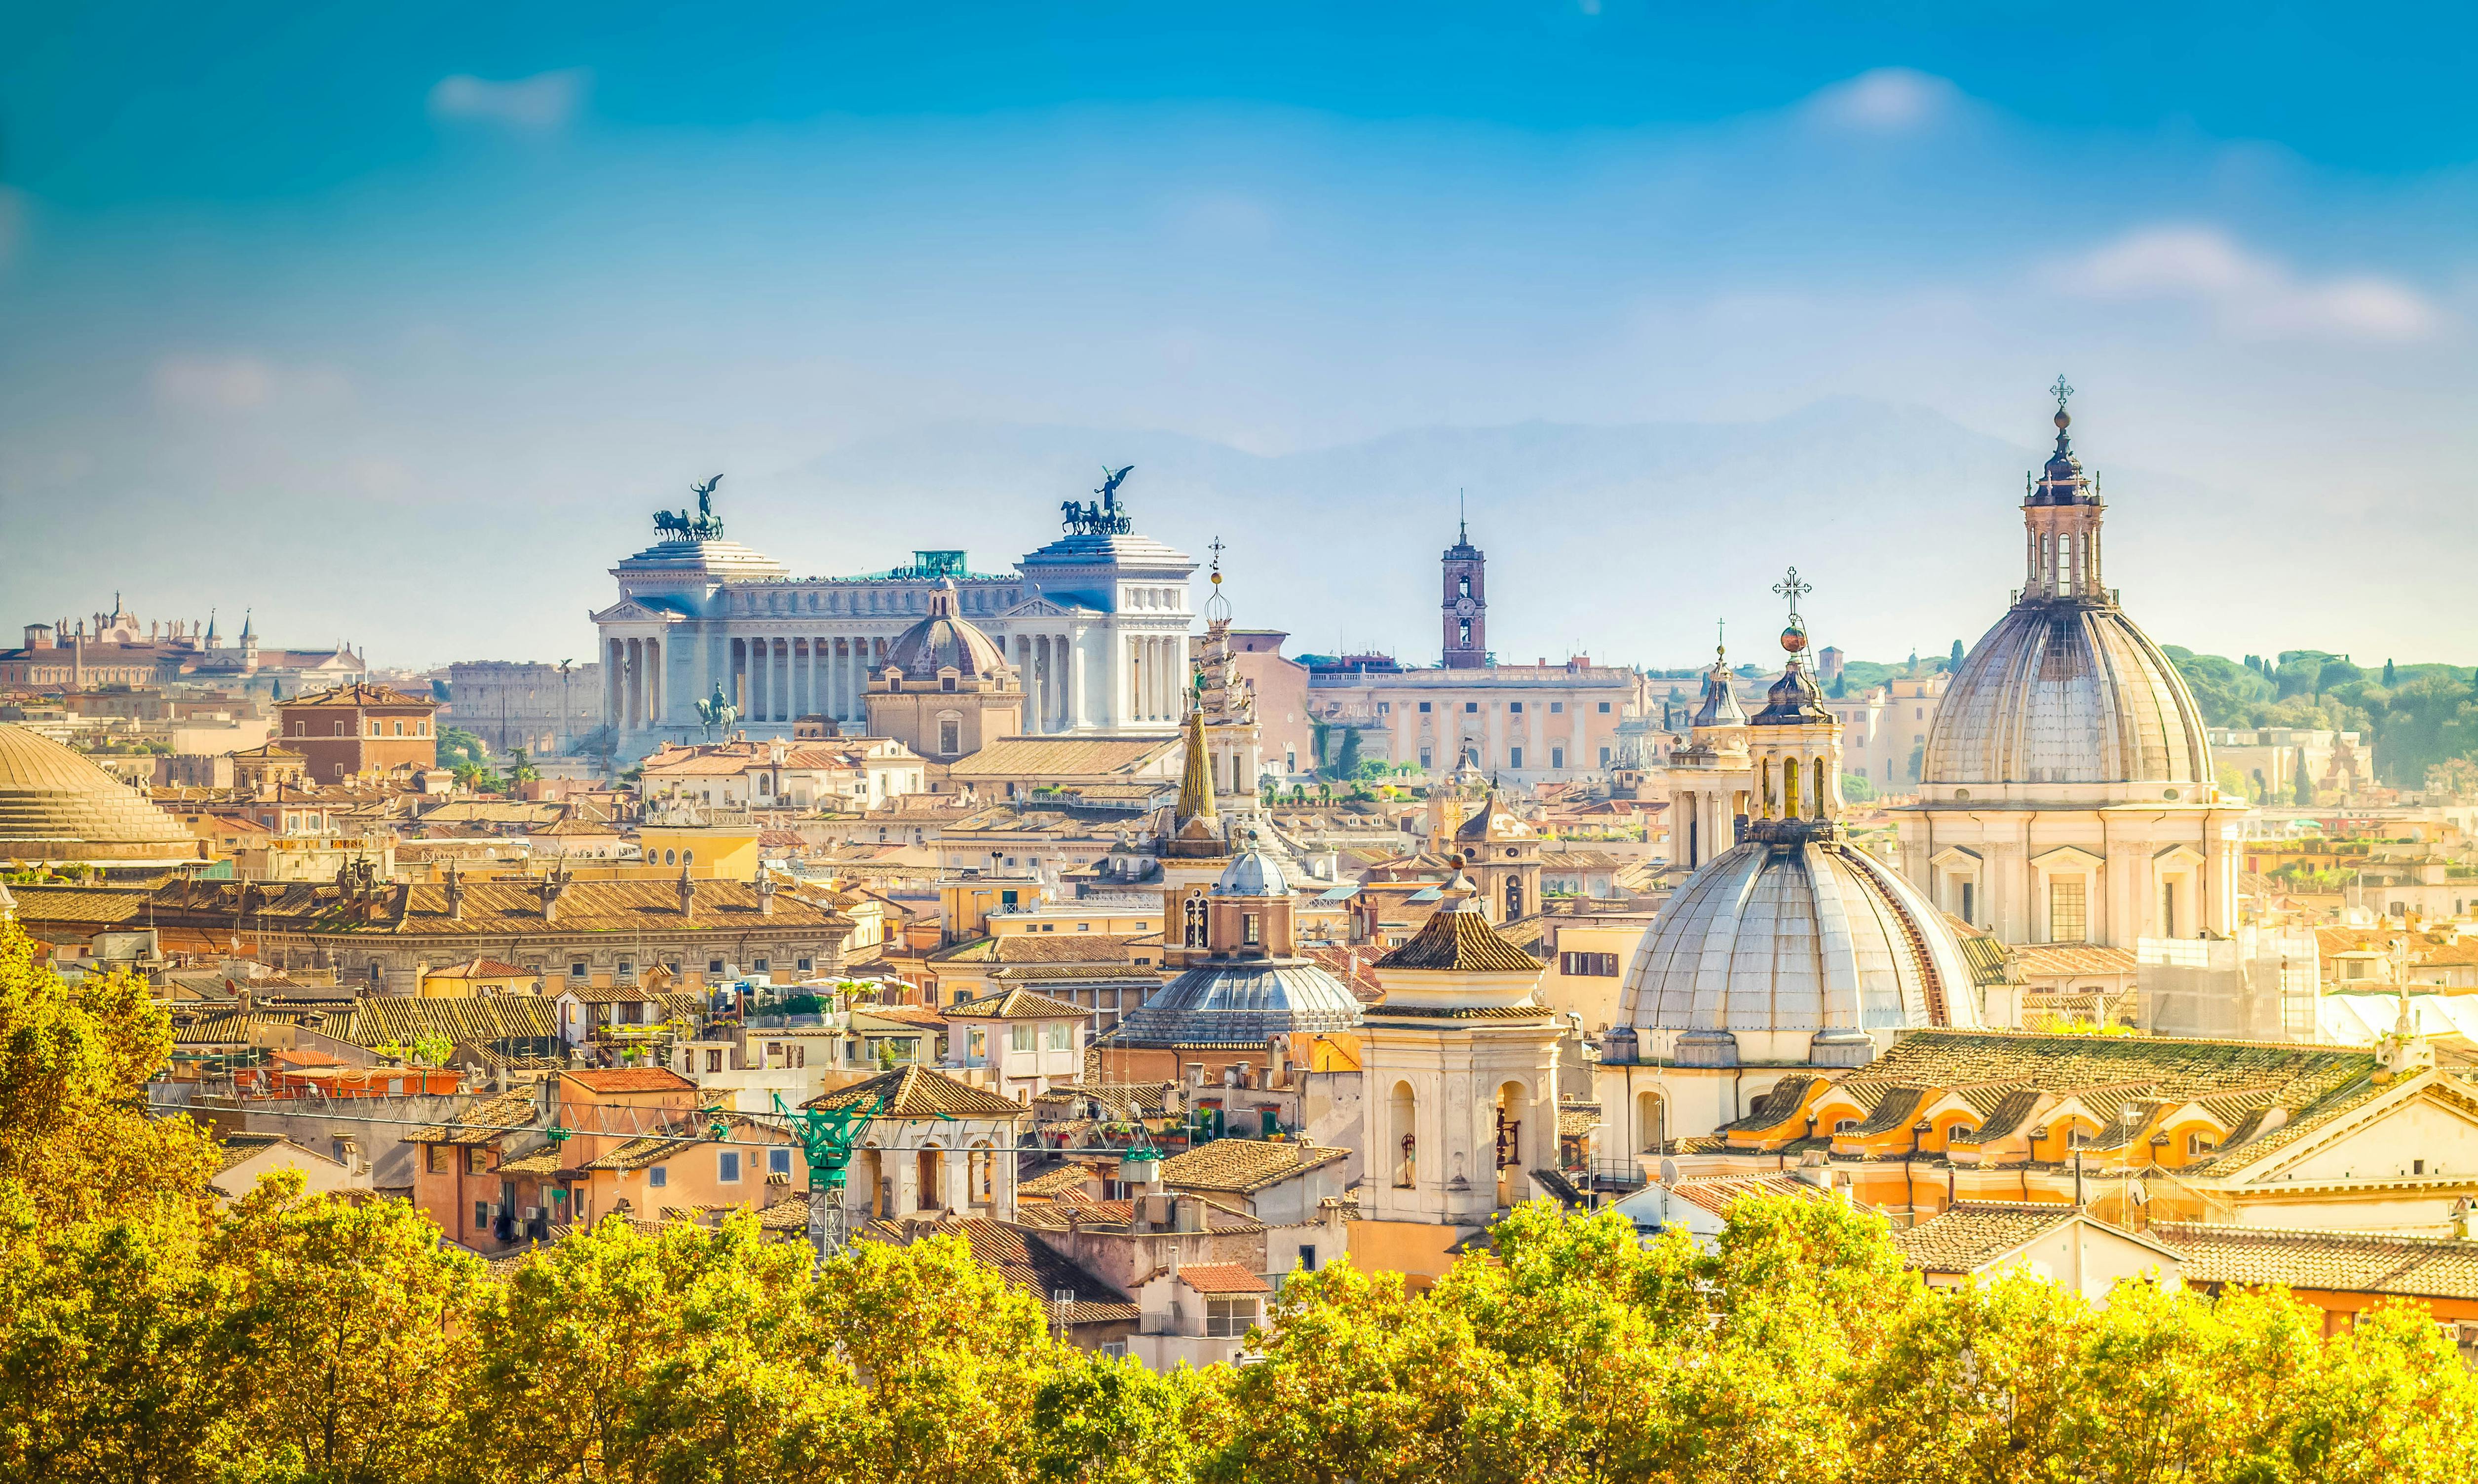 Escape Tour z przewodnikiem, interaktywne wyzwanie miejskie w Rzymie